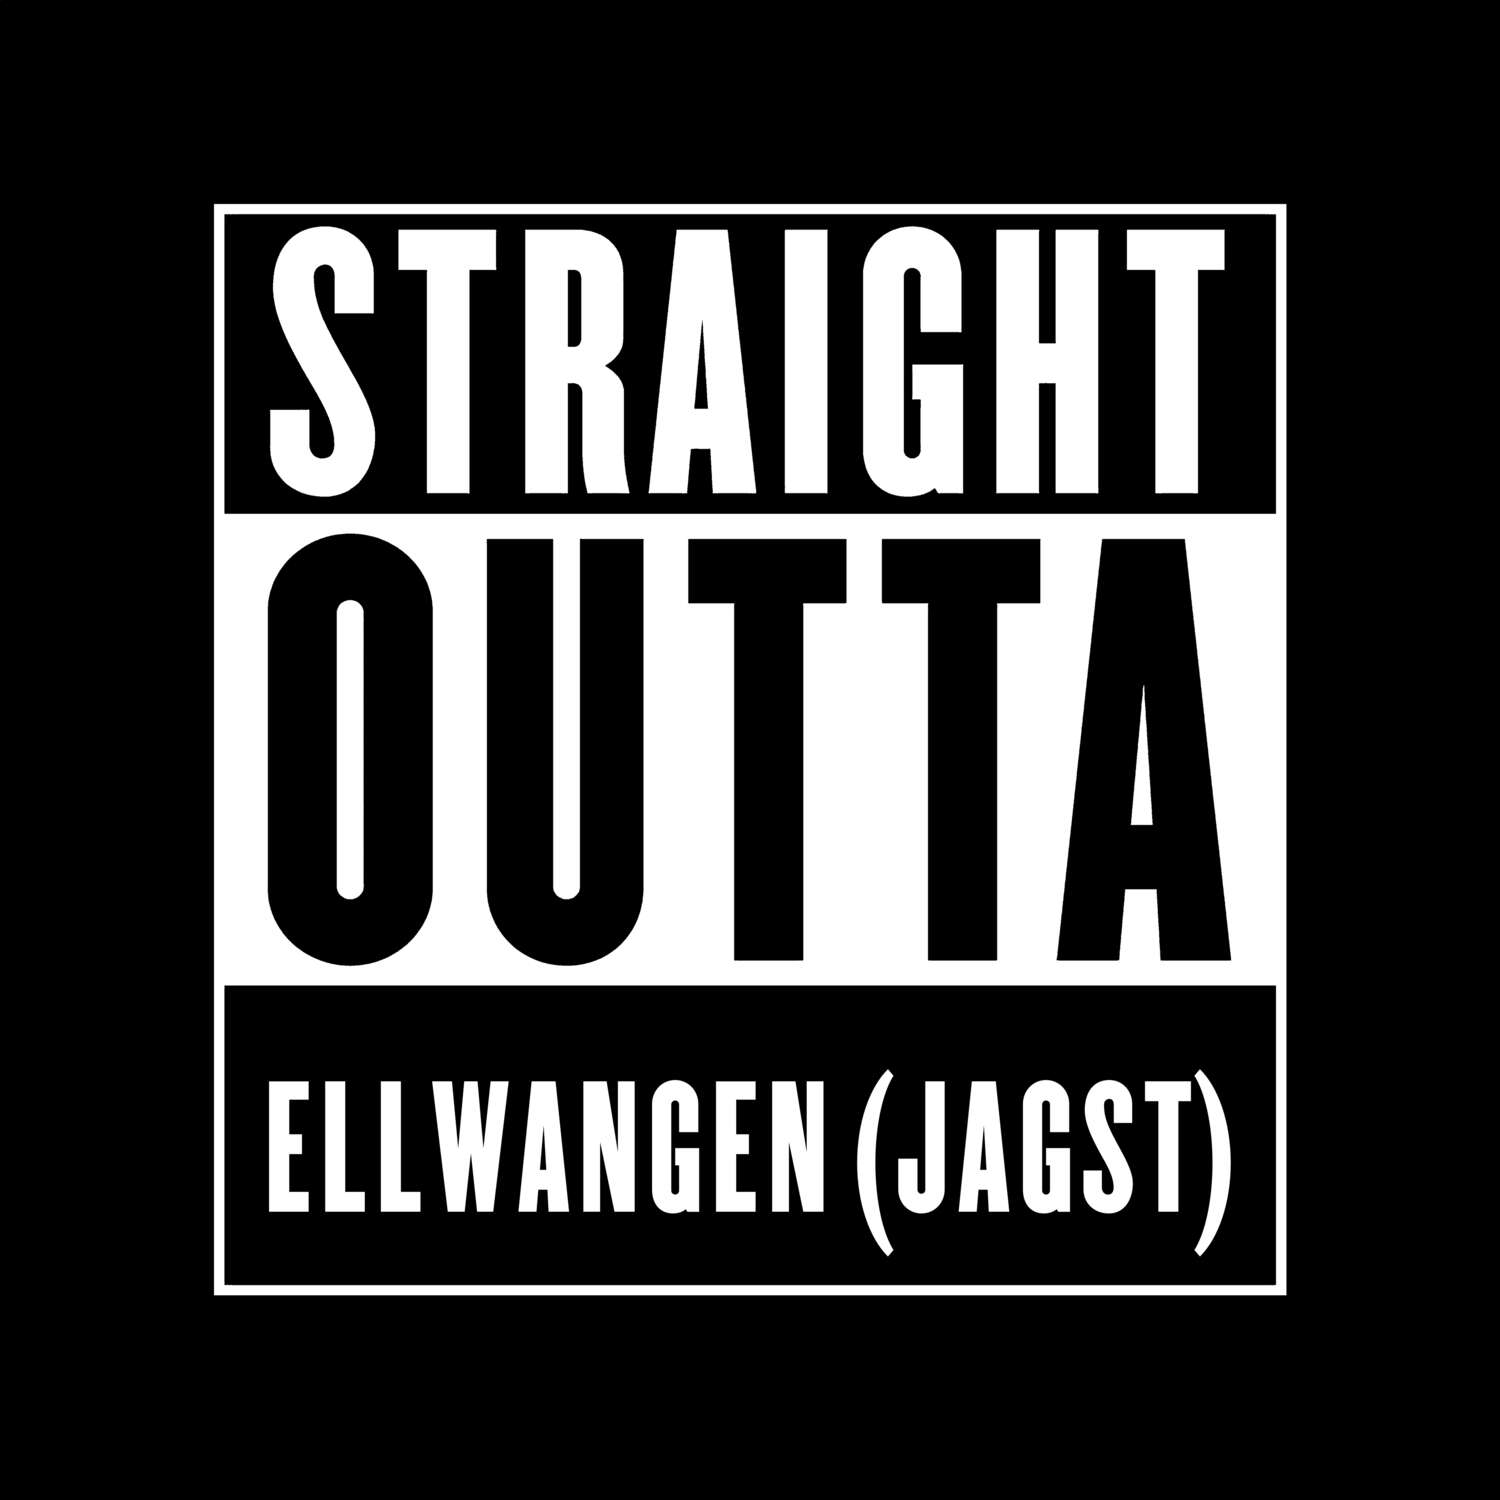 Ellwangen (Jagst) T-Shirt »Straight Outta«